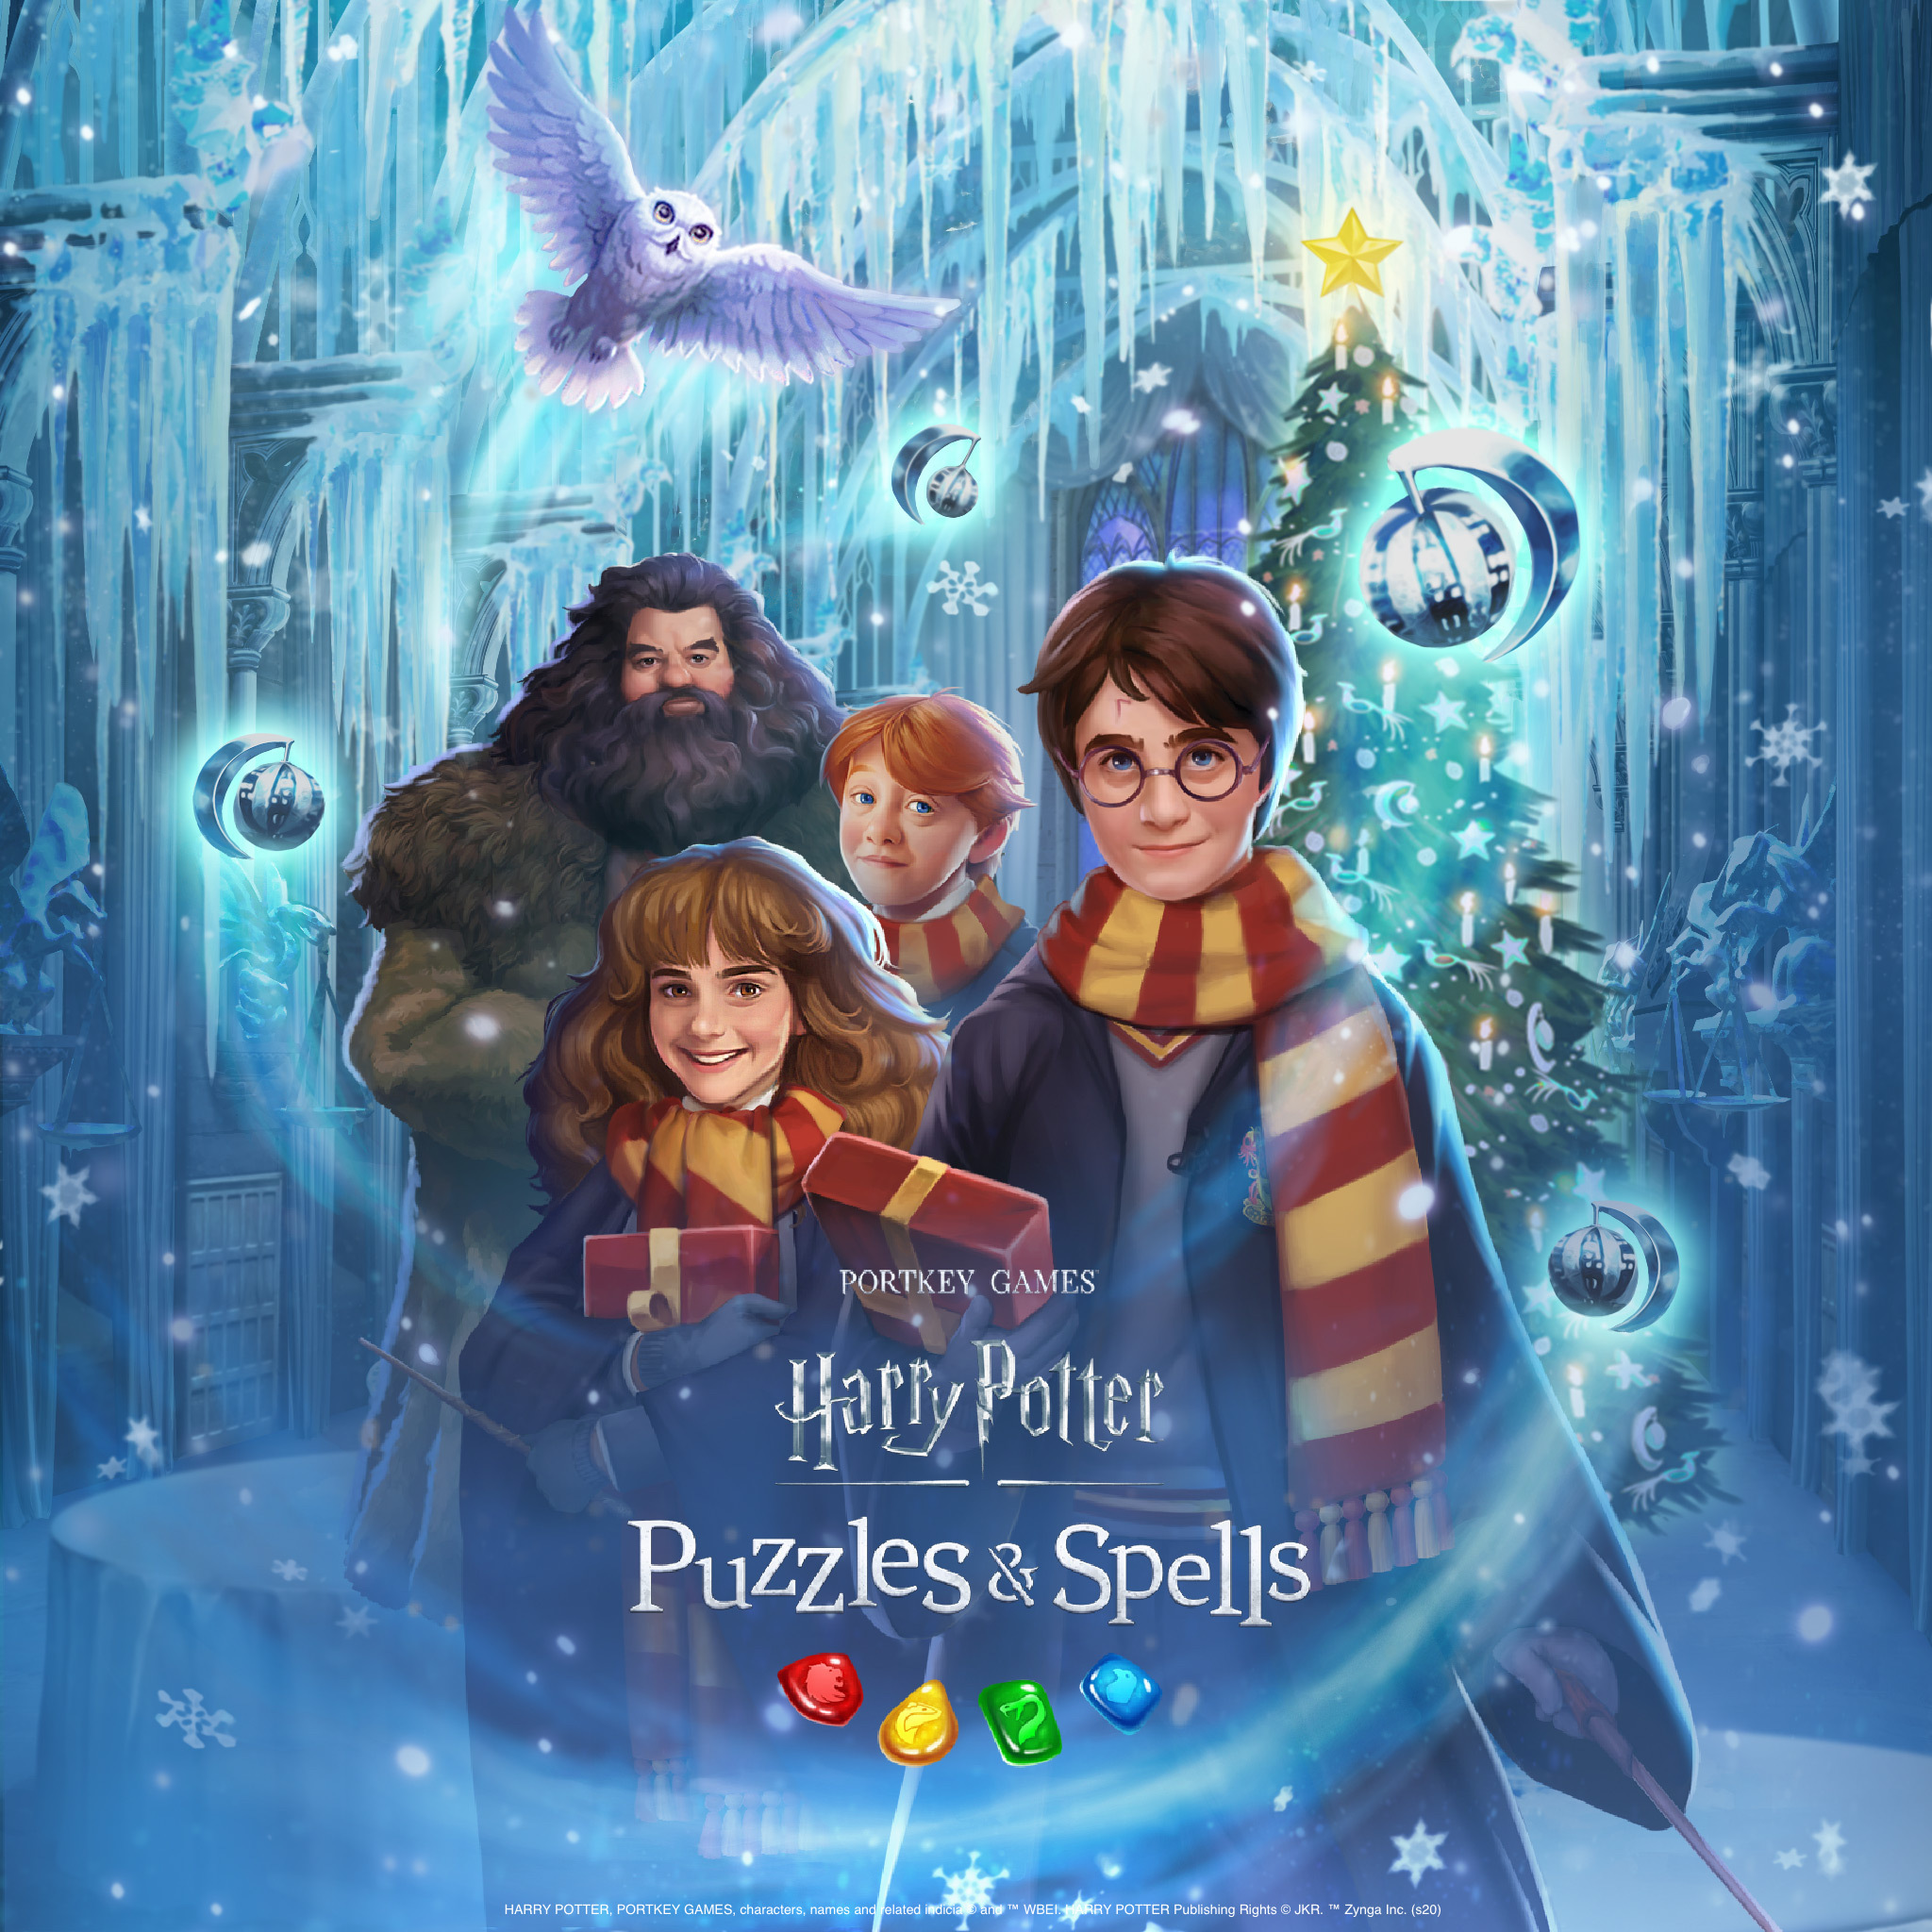 ハリー ポッター 呪文と魔法のパズル が12月いっぱい クリスマスをテーマにしたコレクション イベント 新しい魔法生物 ソーシャルメディアのサプライズで 冬のホリデーシーズンを盛り上げる Business Wire